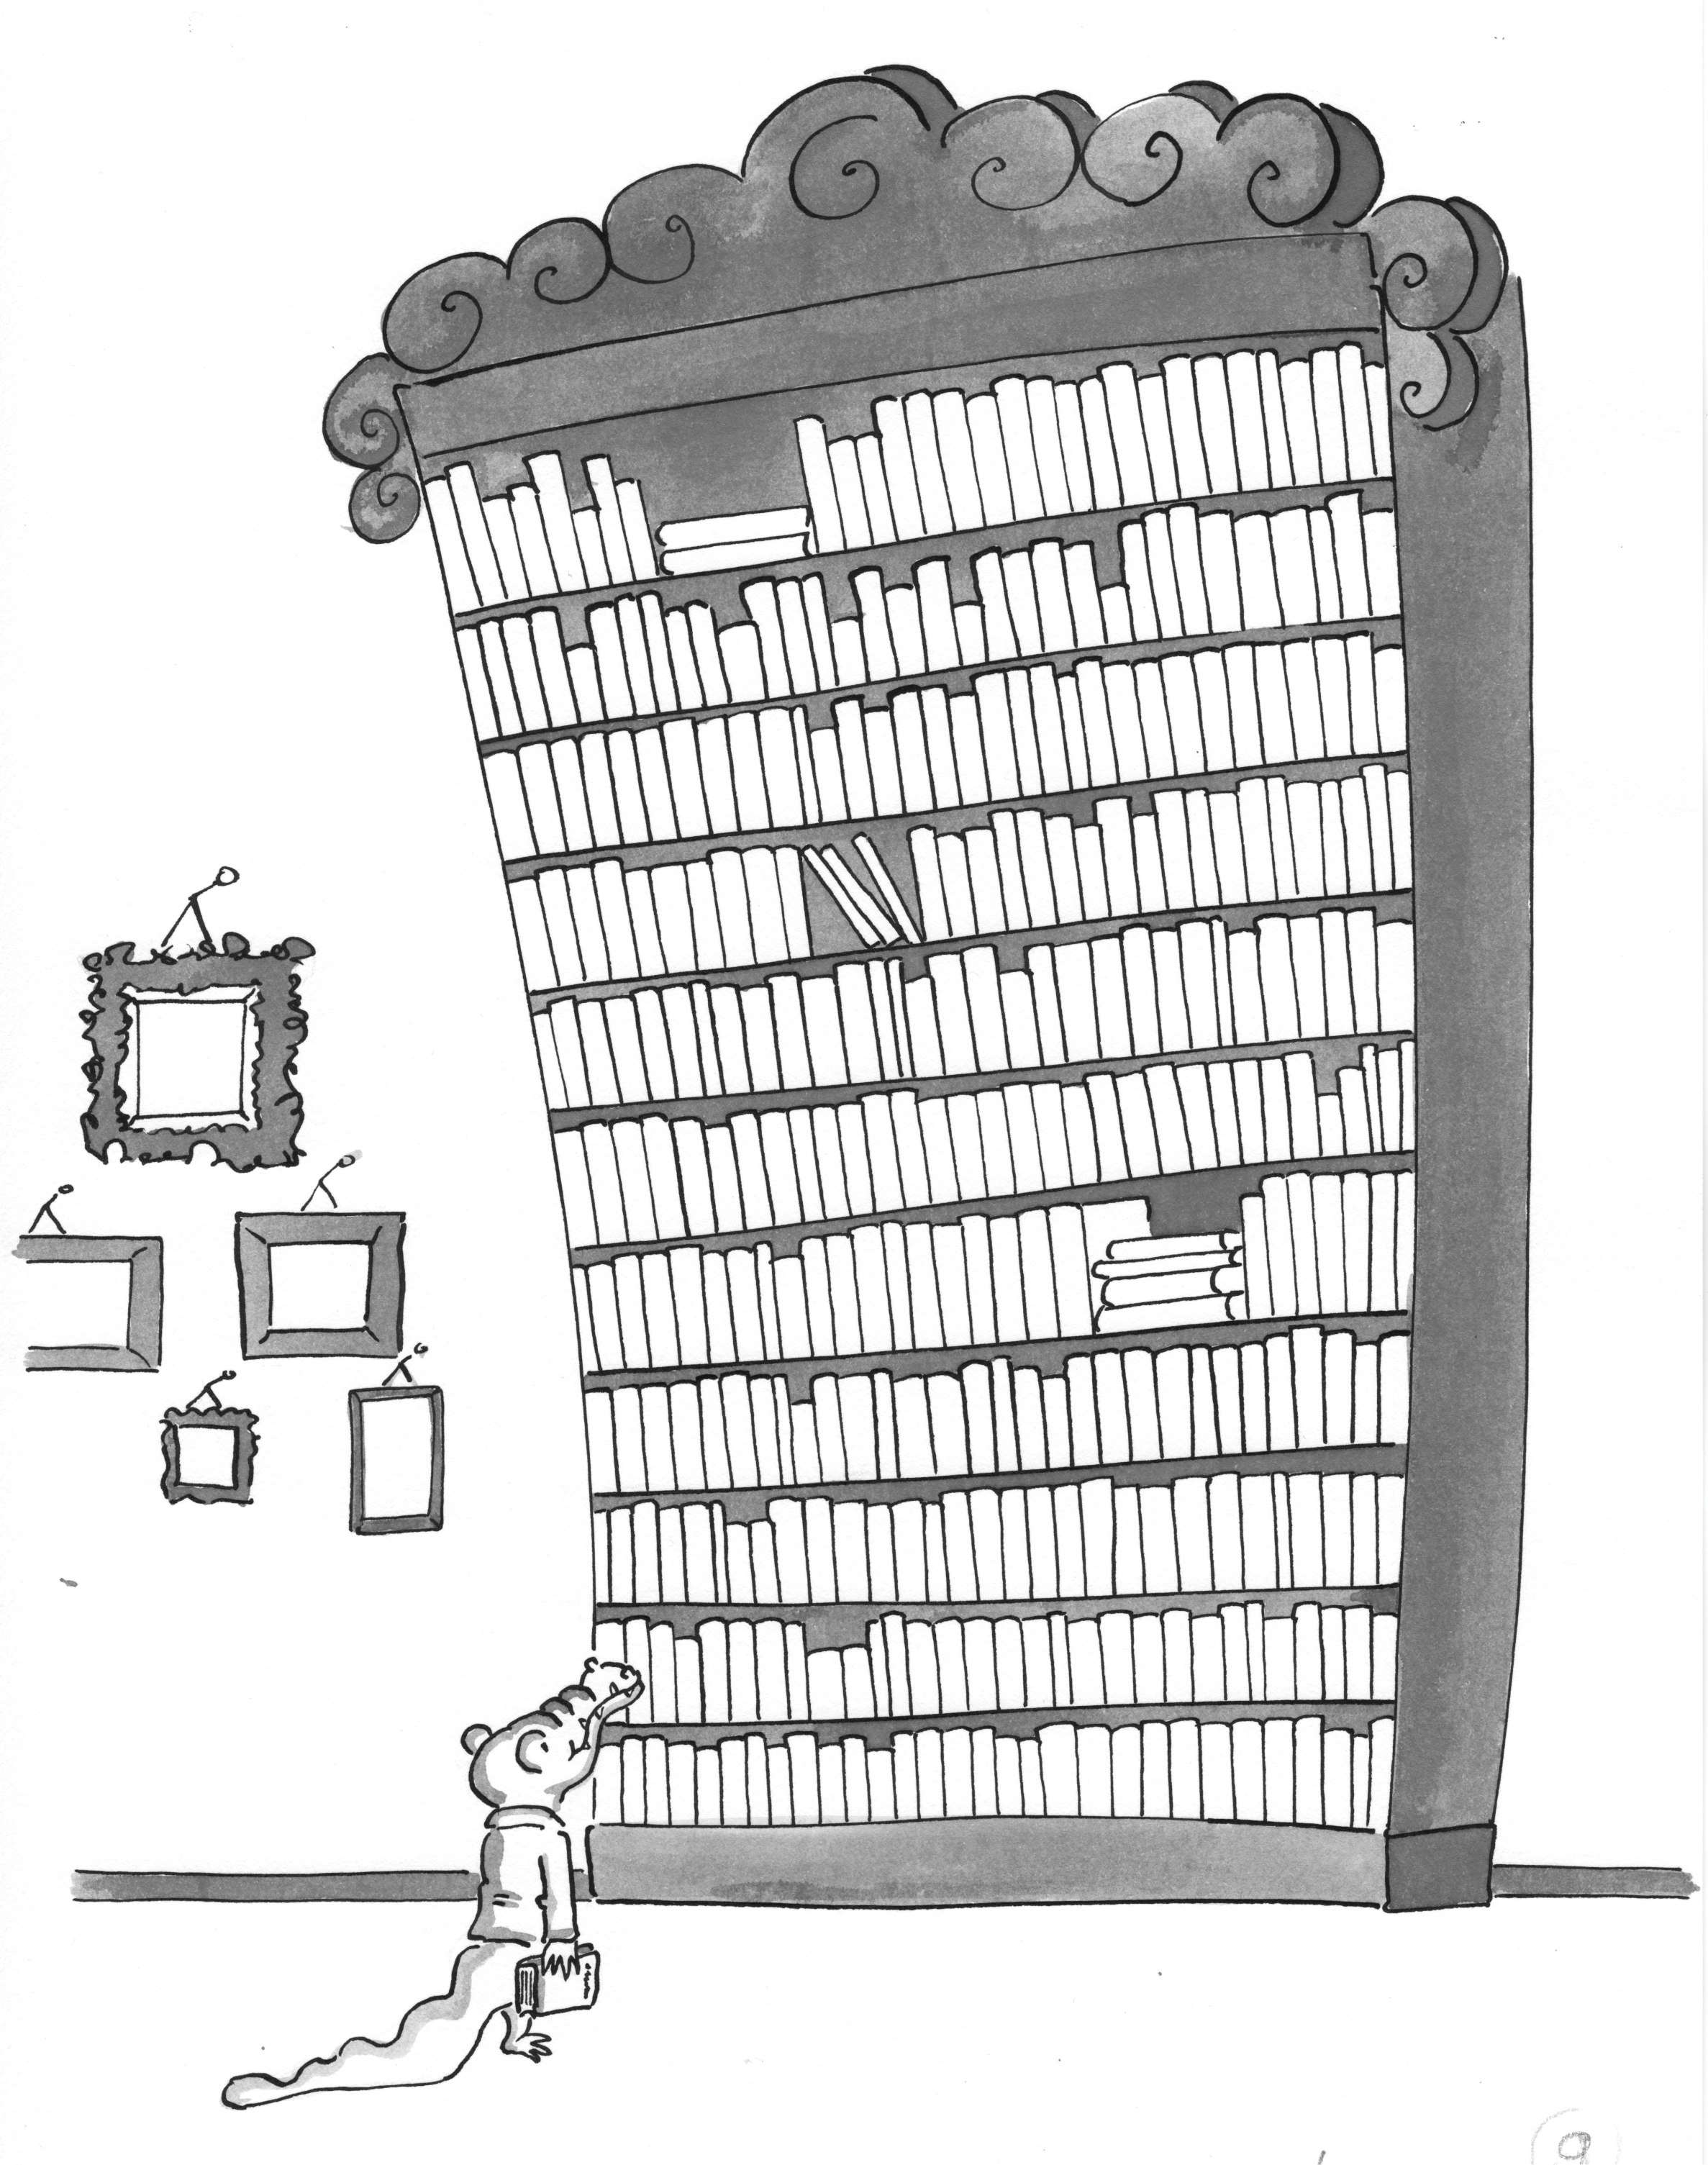 Je verhalenbibliotheek zit voller dan je misschien denkt